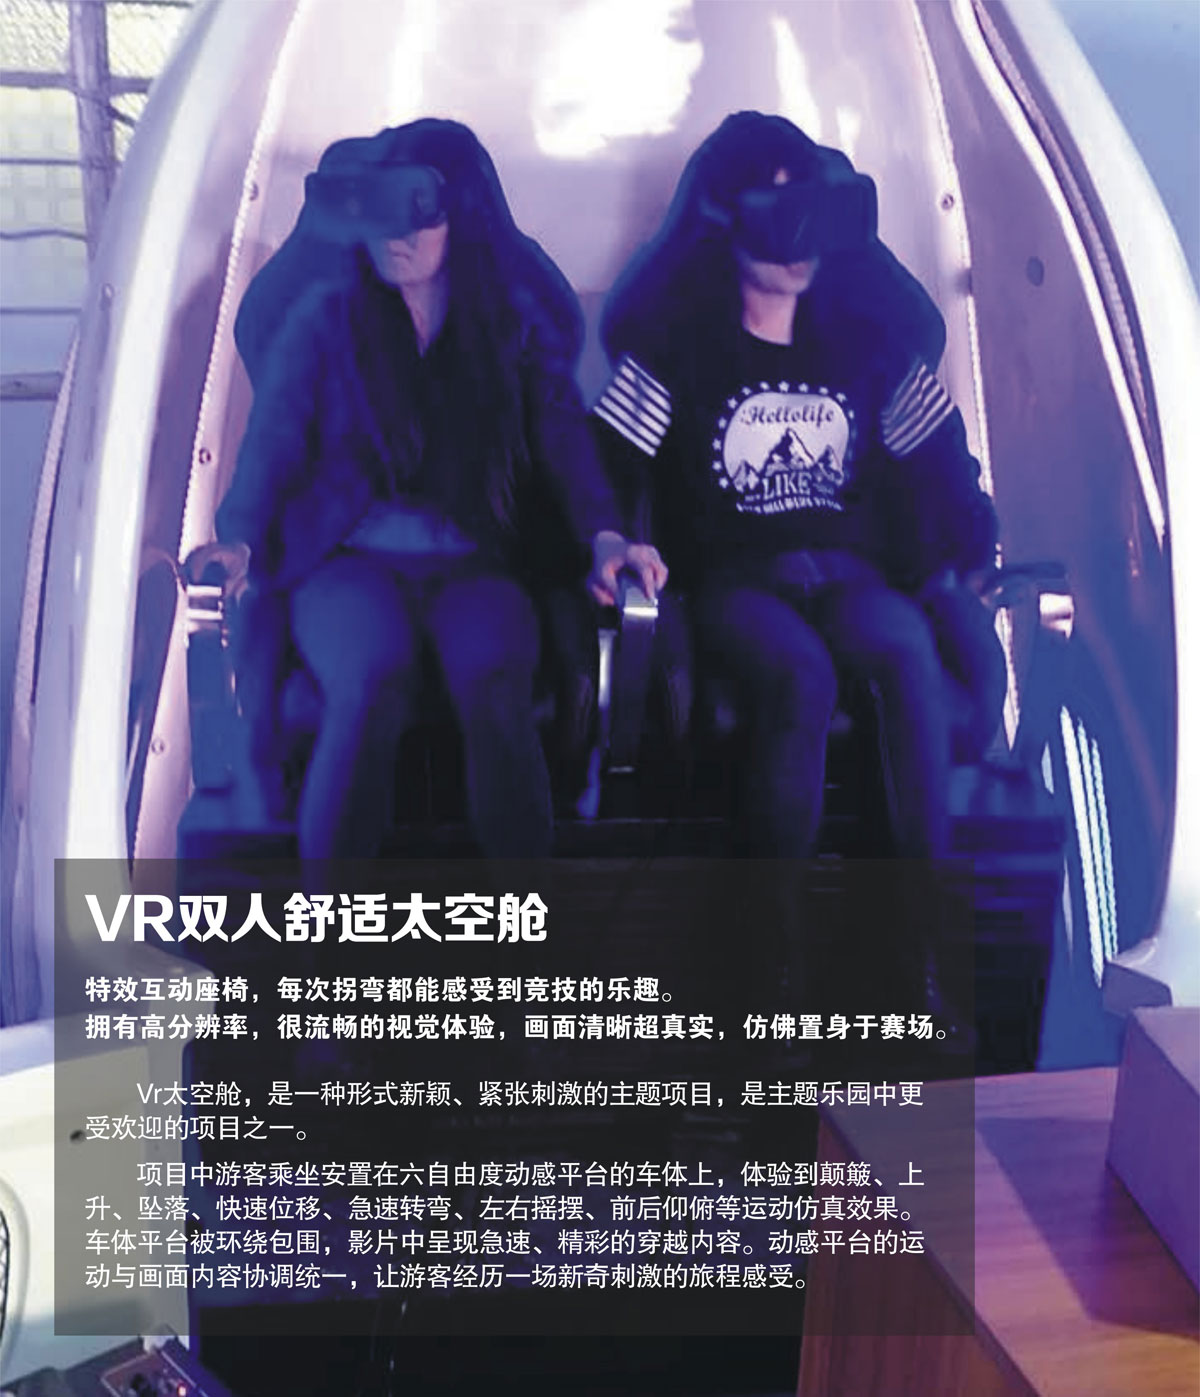 VR双人舒适太空舱.jpg